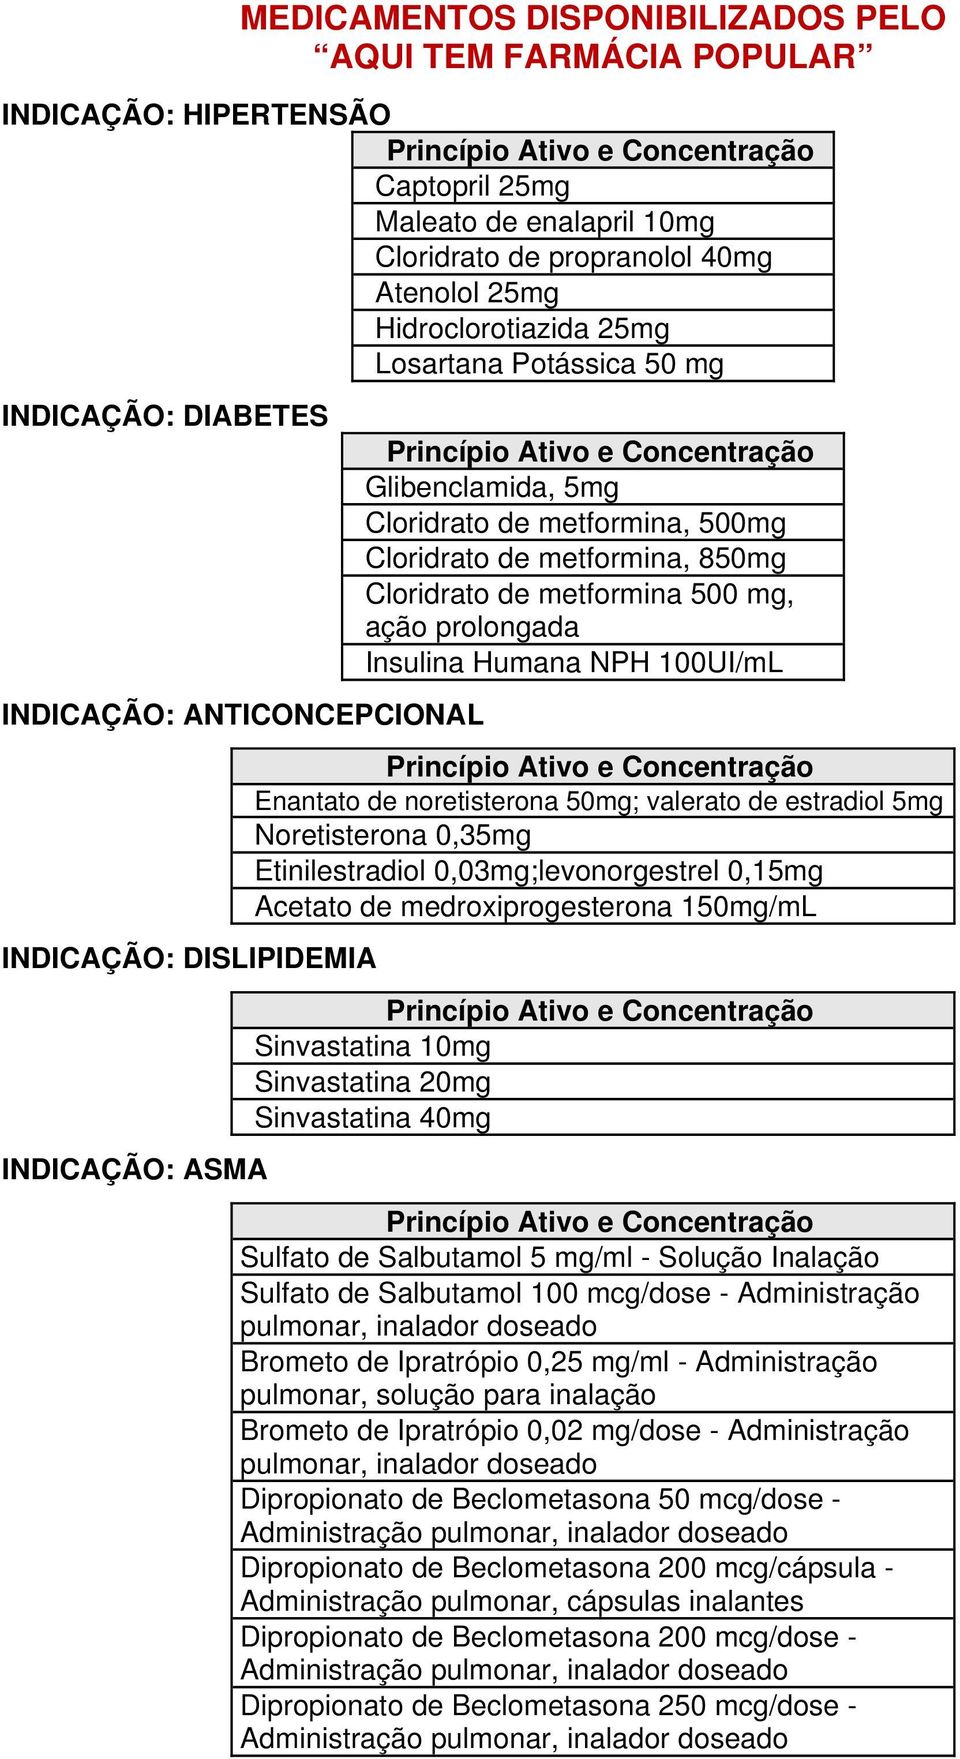 Cloridrato de metformina 500 mg, ação prolongada Insulina Humana NPH 100UI/mL Enantato de noretisterona 50mg; valerato de estradiol 5mg Noretisterona 0,35mg Etinilestradiol 0,03mg;levonorgestrel